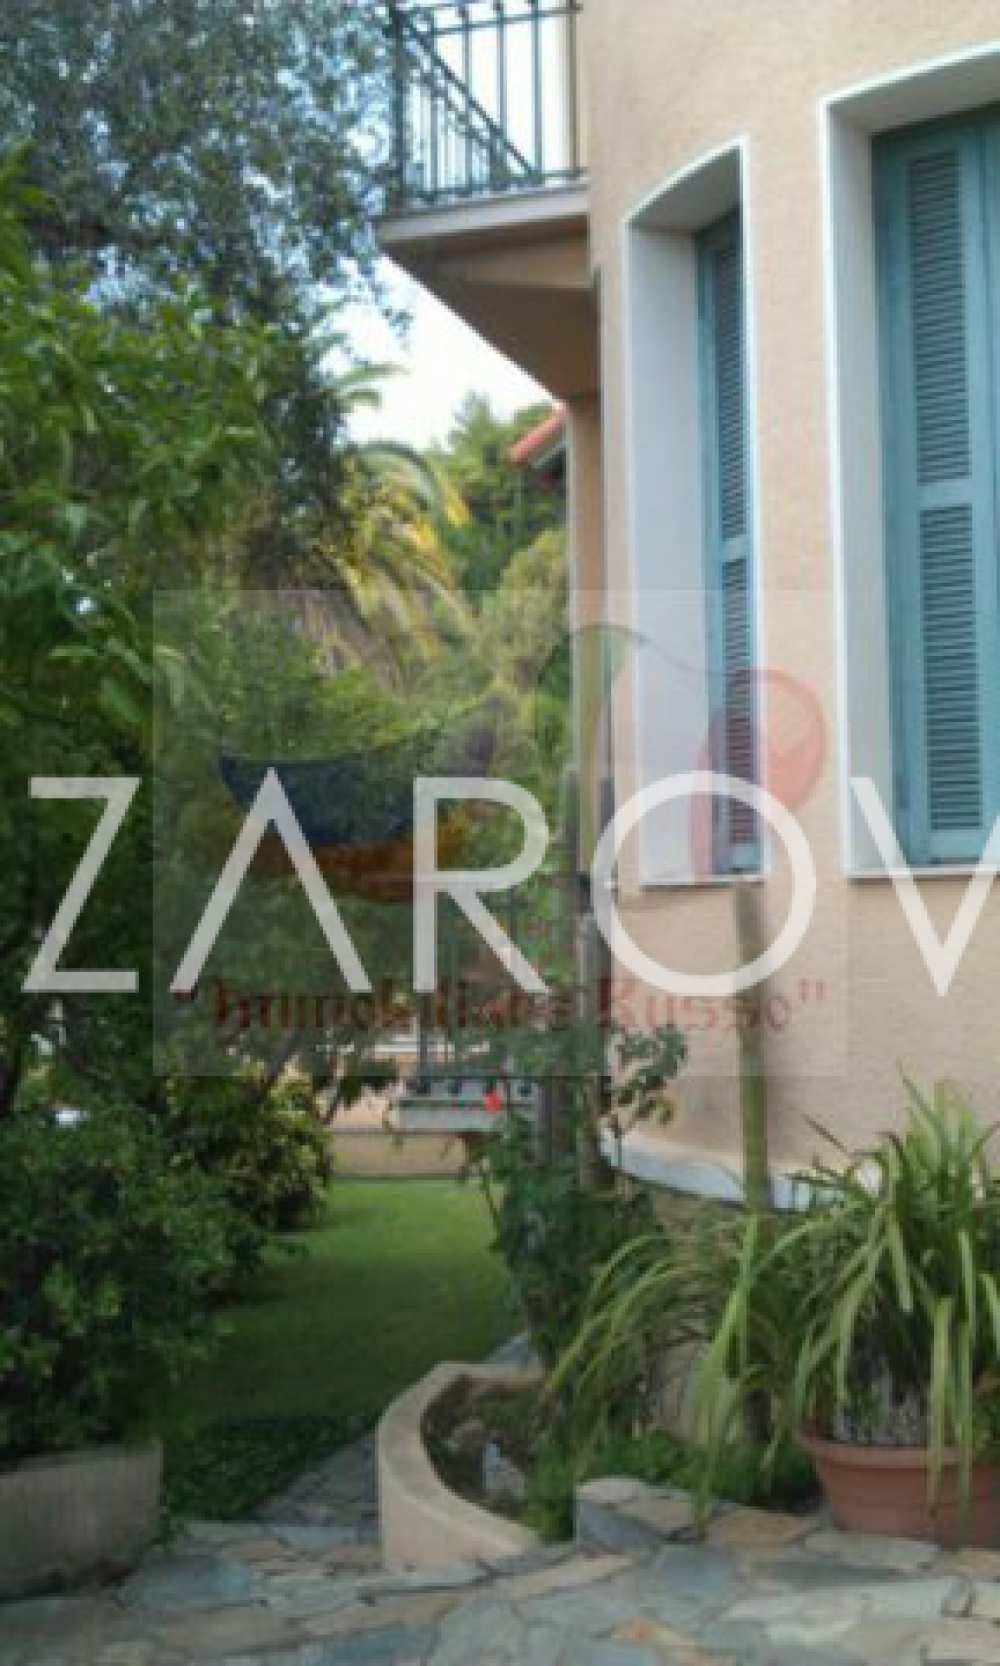 Comprar una propiedad junto al mar en Italia | Villa Bordighera en venta